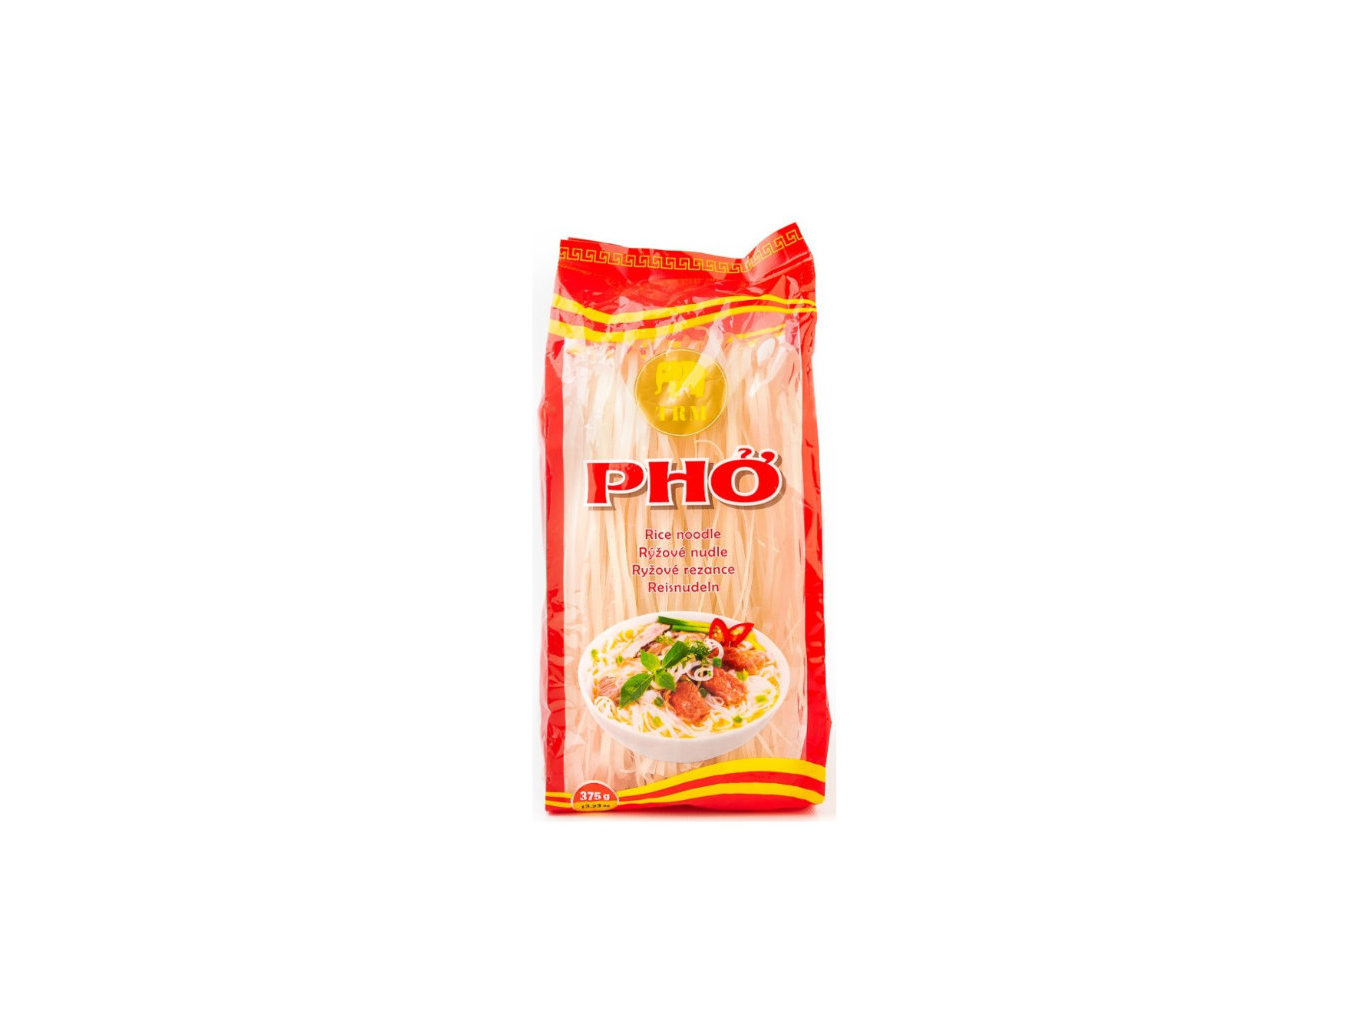 TRM Rýžové nudle na polévku Pho (5 mm) 375g